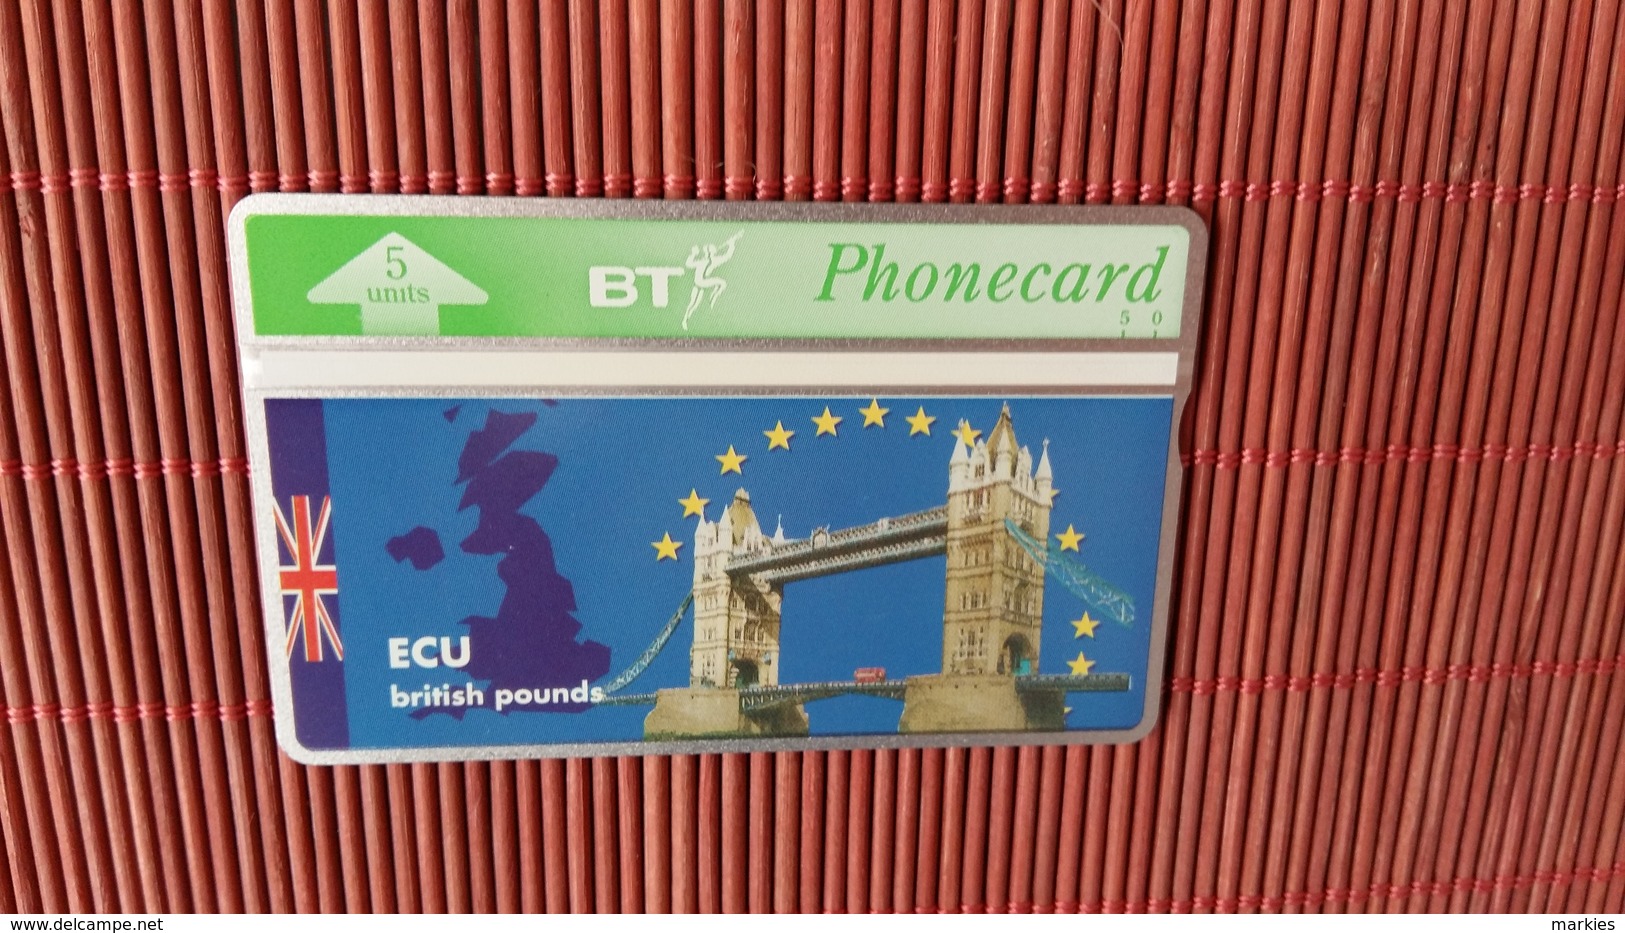 Phonecard Private ECU 309 G (Mint,Neuve)  Rare - BT Private Issues